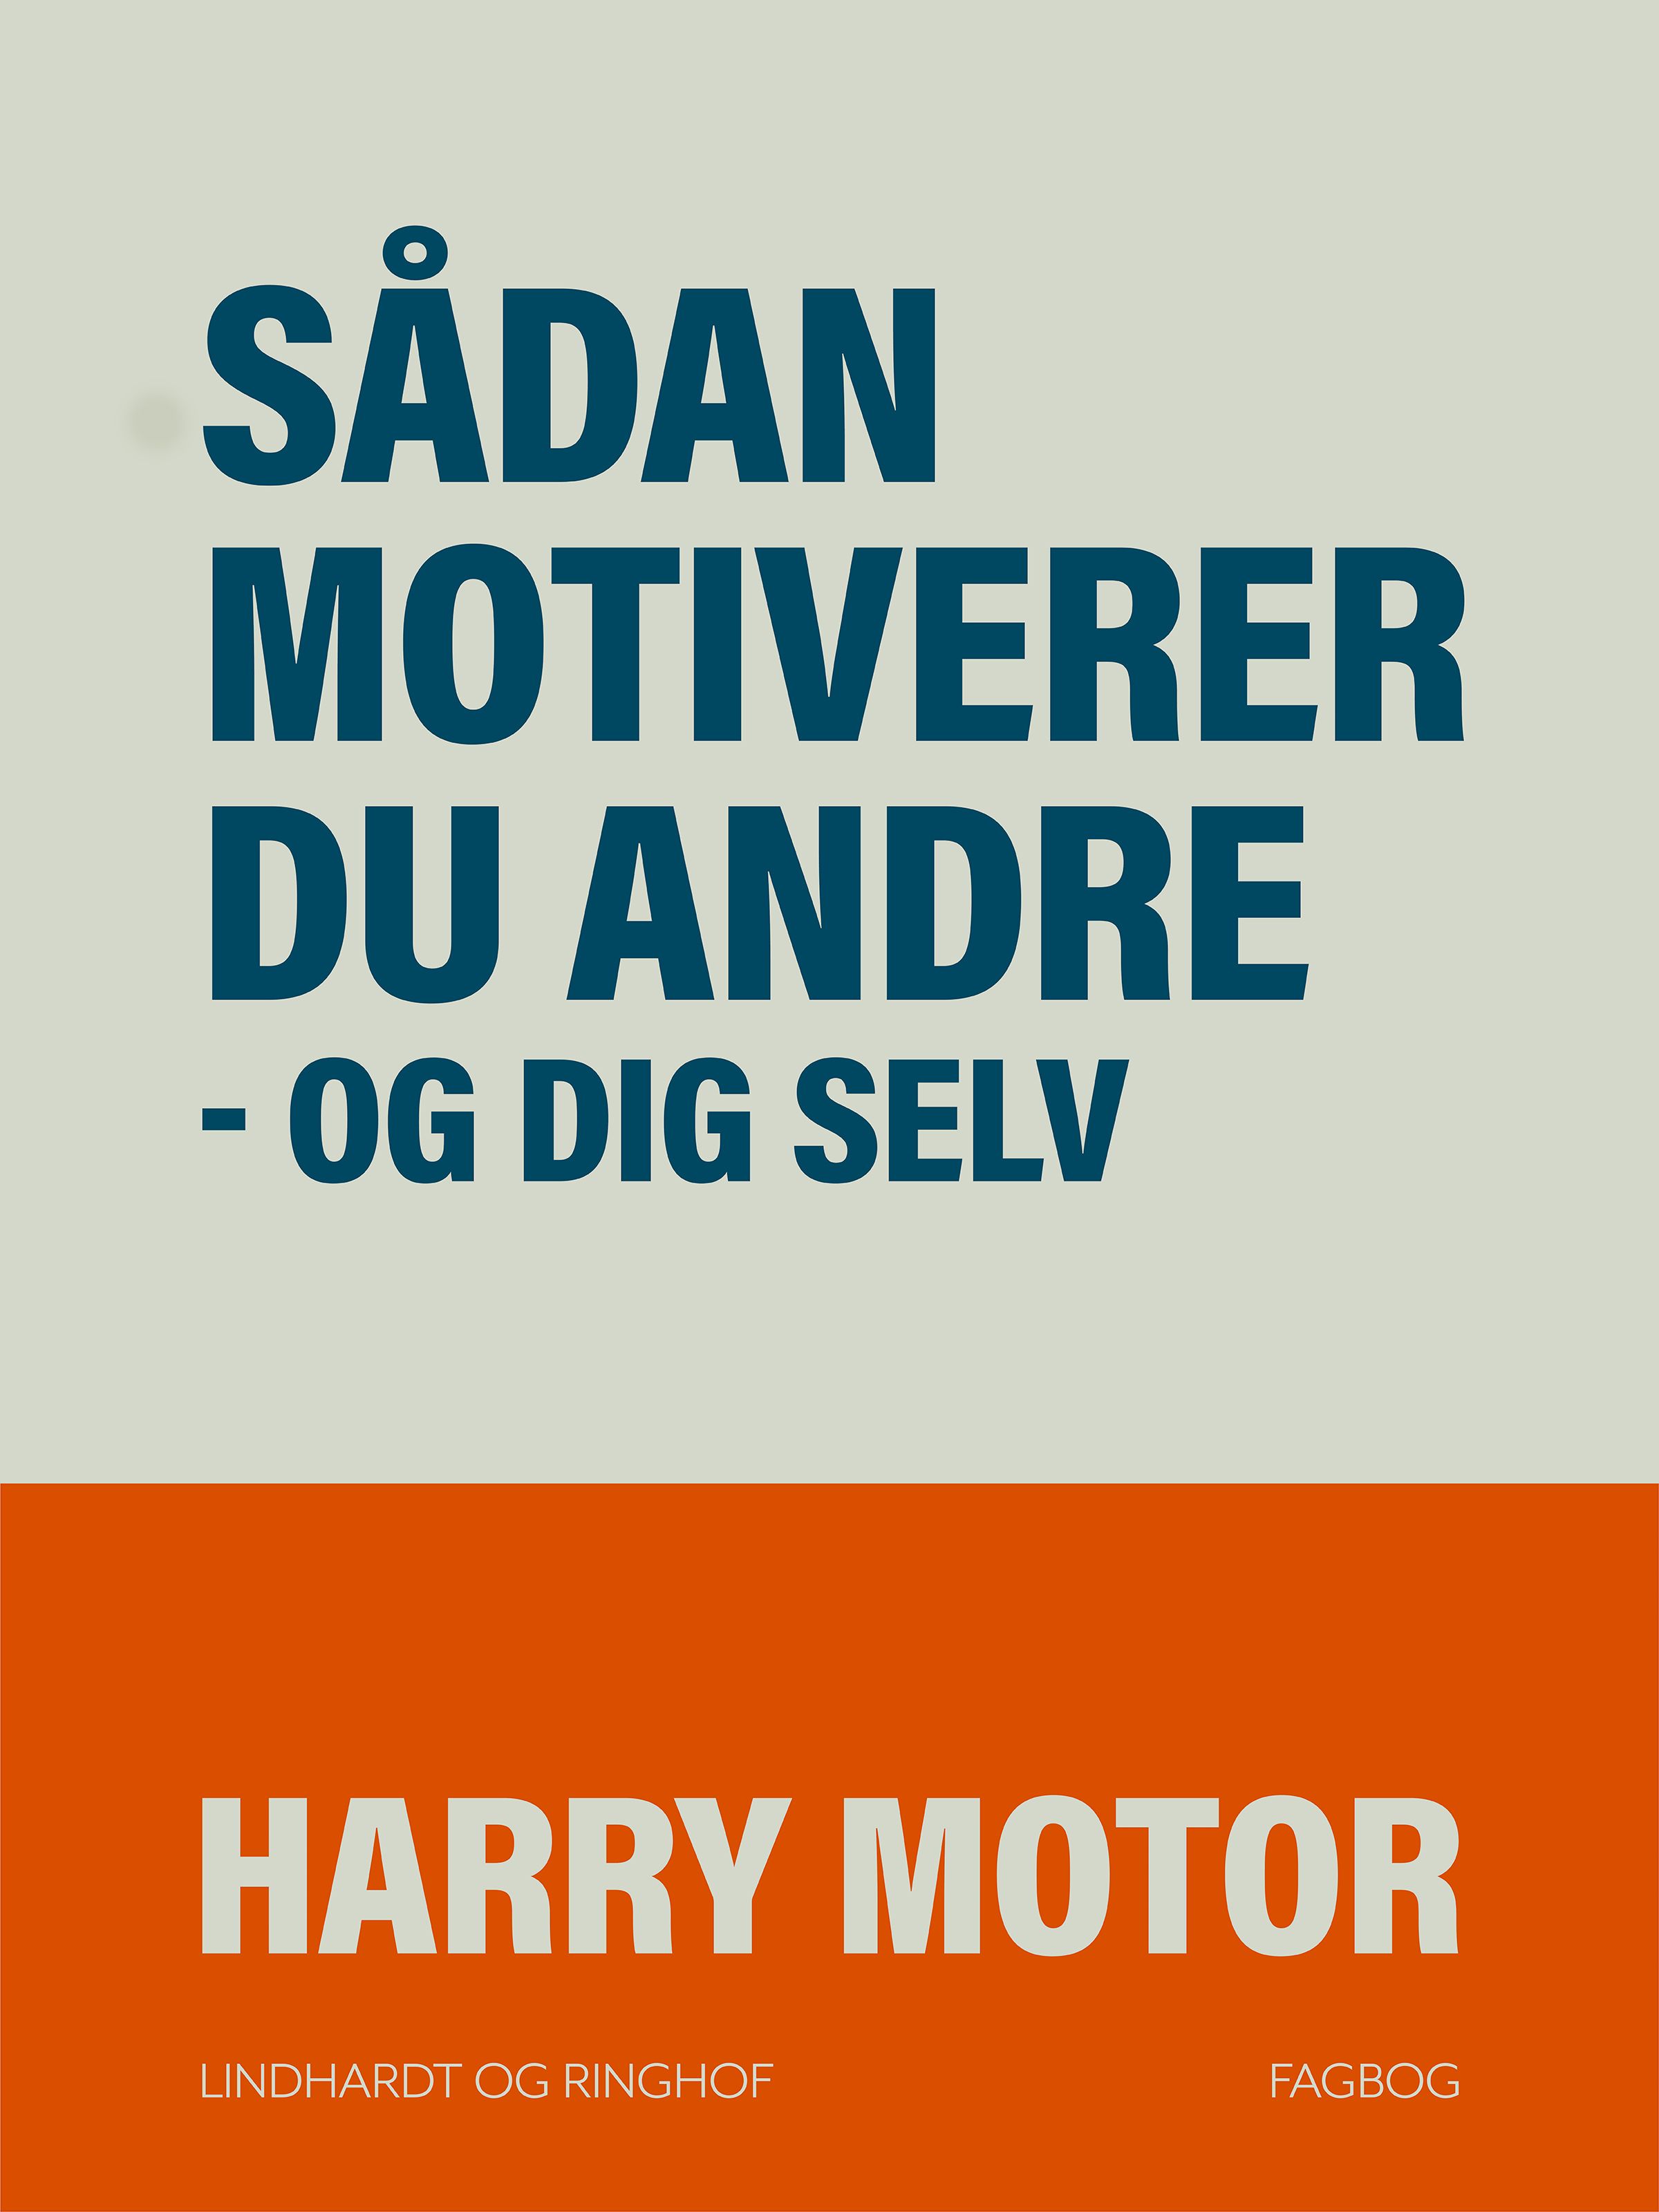 Sådan motiverer du andre - og dig selv, e-bok av Harry Motor